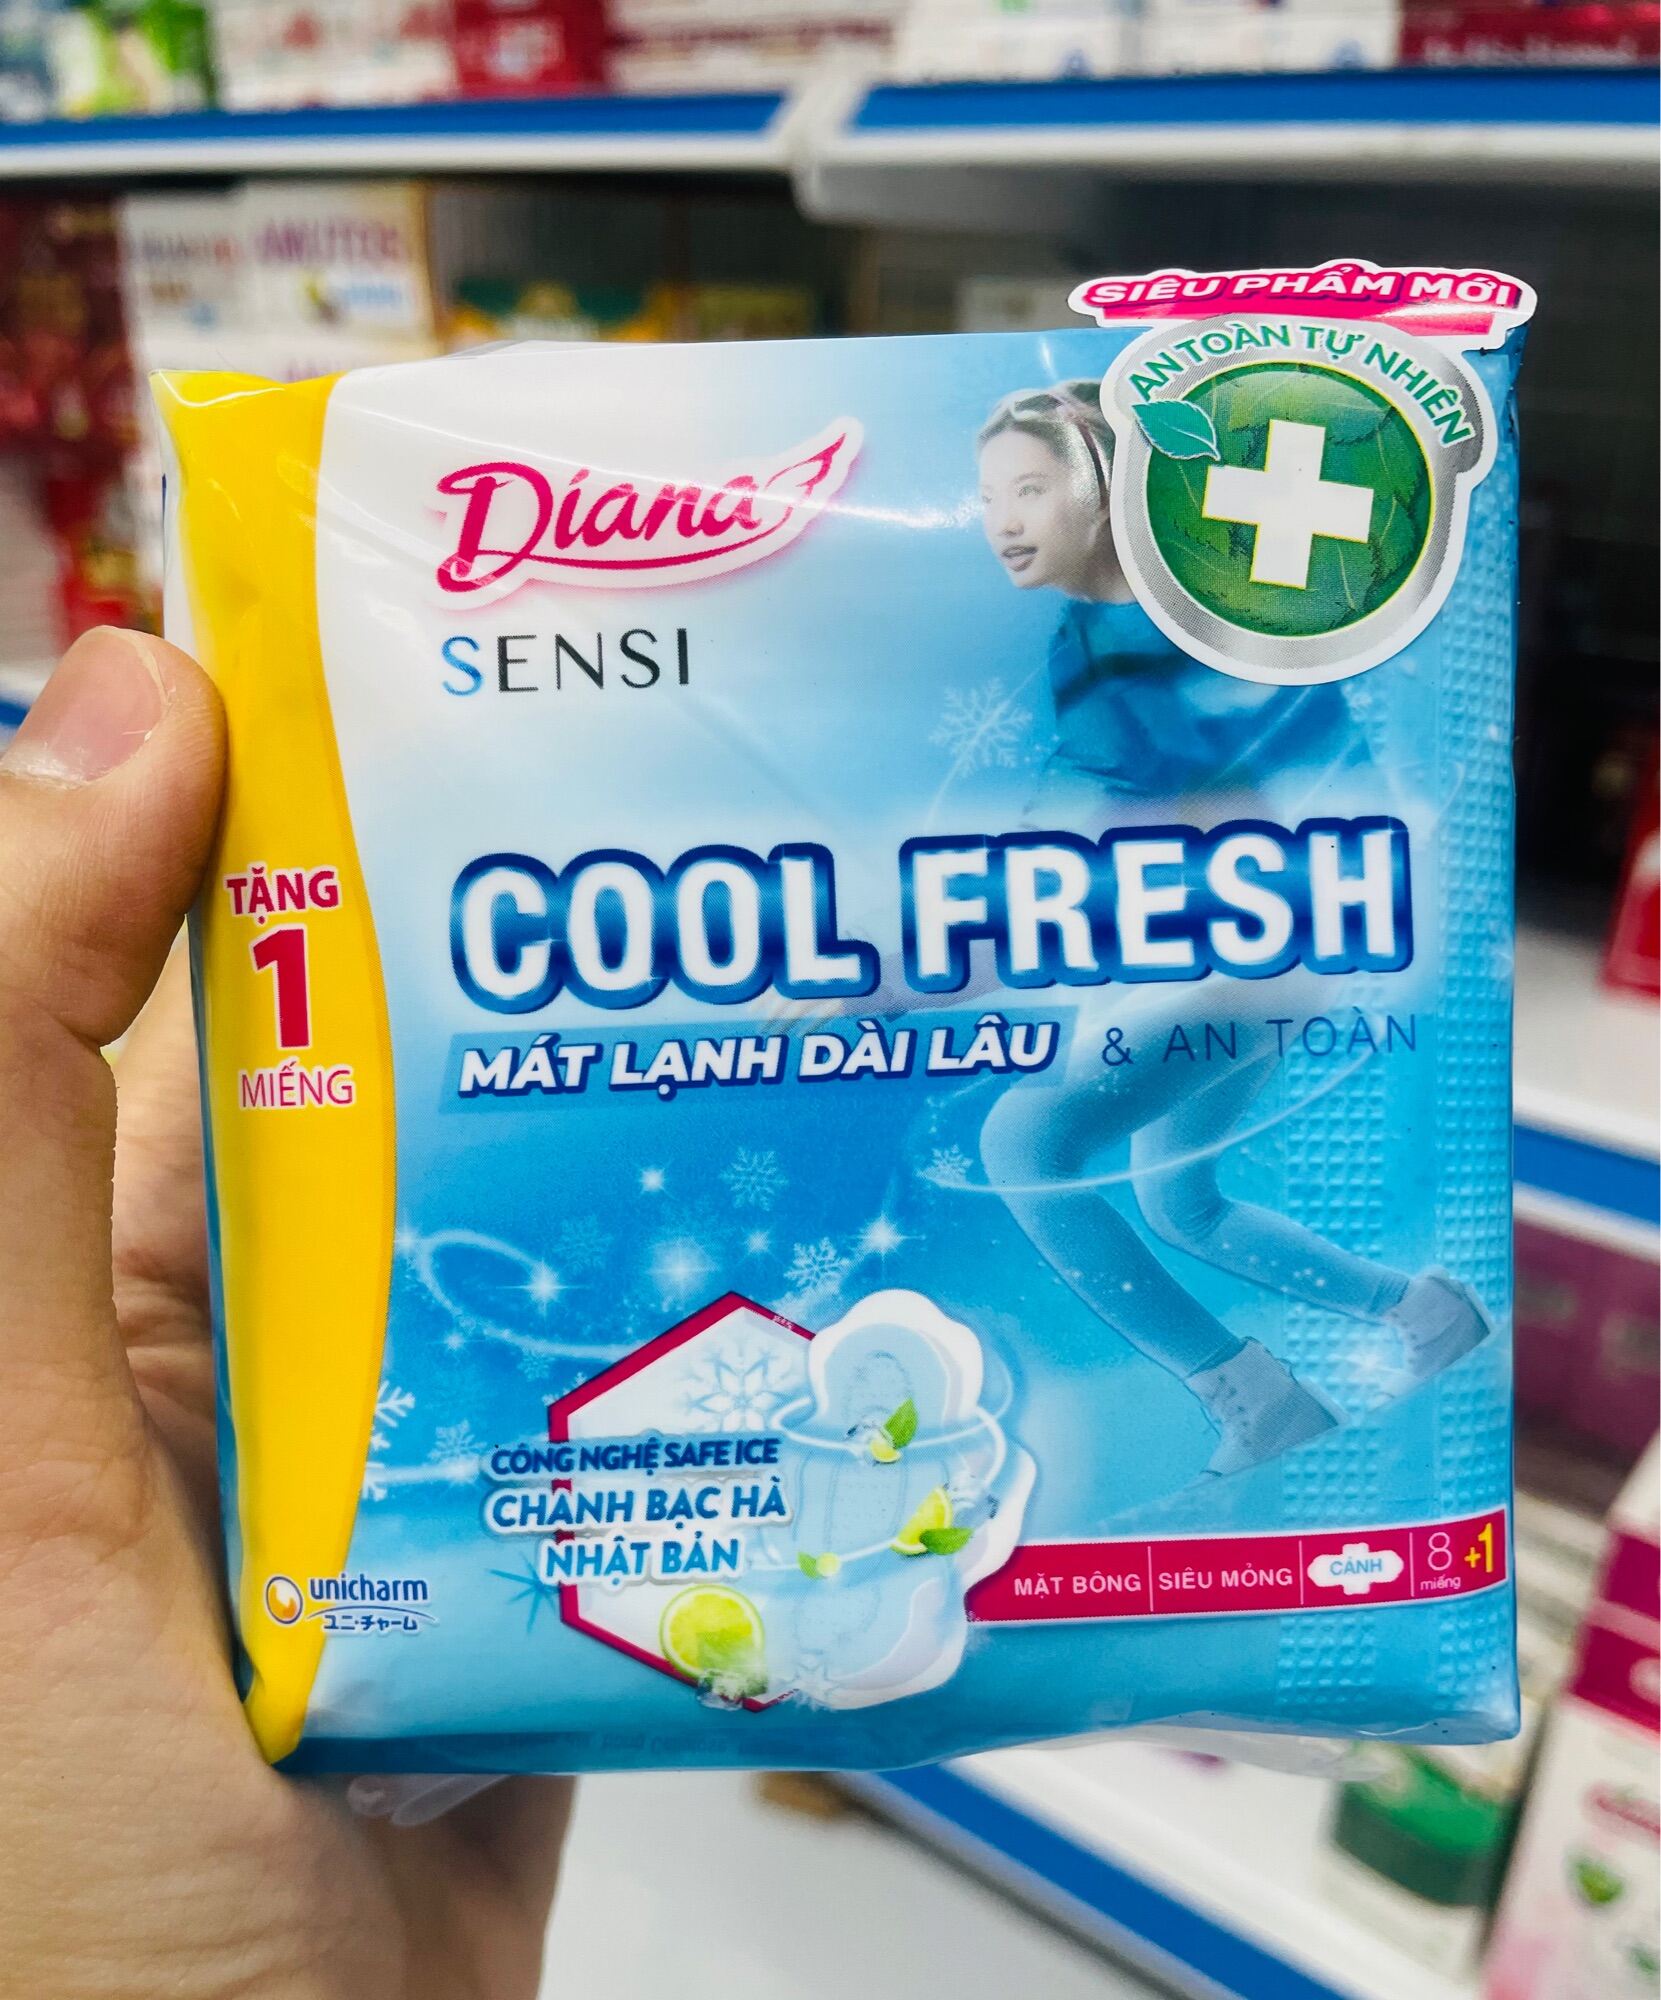 Băng Vệ Sinh Diana Cool Fresh siêu mỏng làm lạnh - Gói 8m có khuyen mai